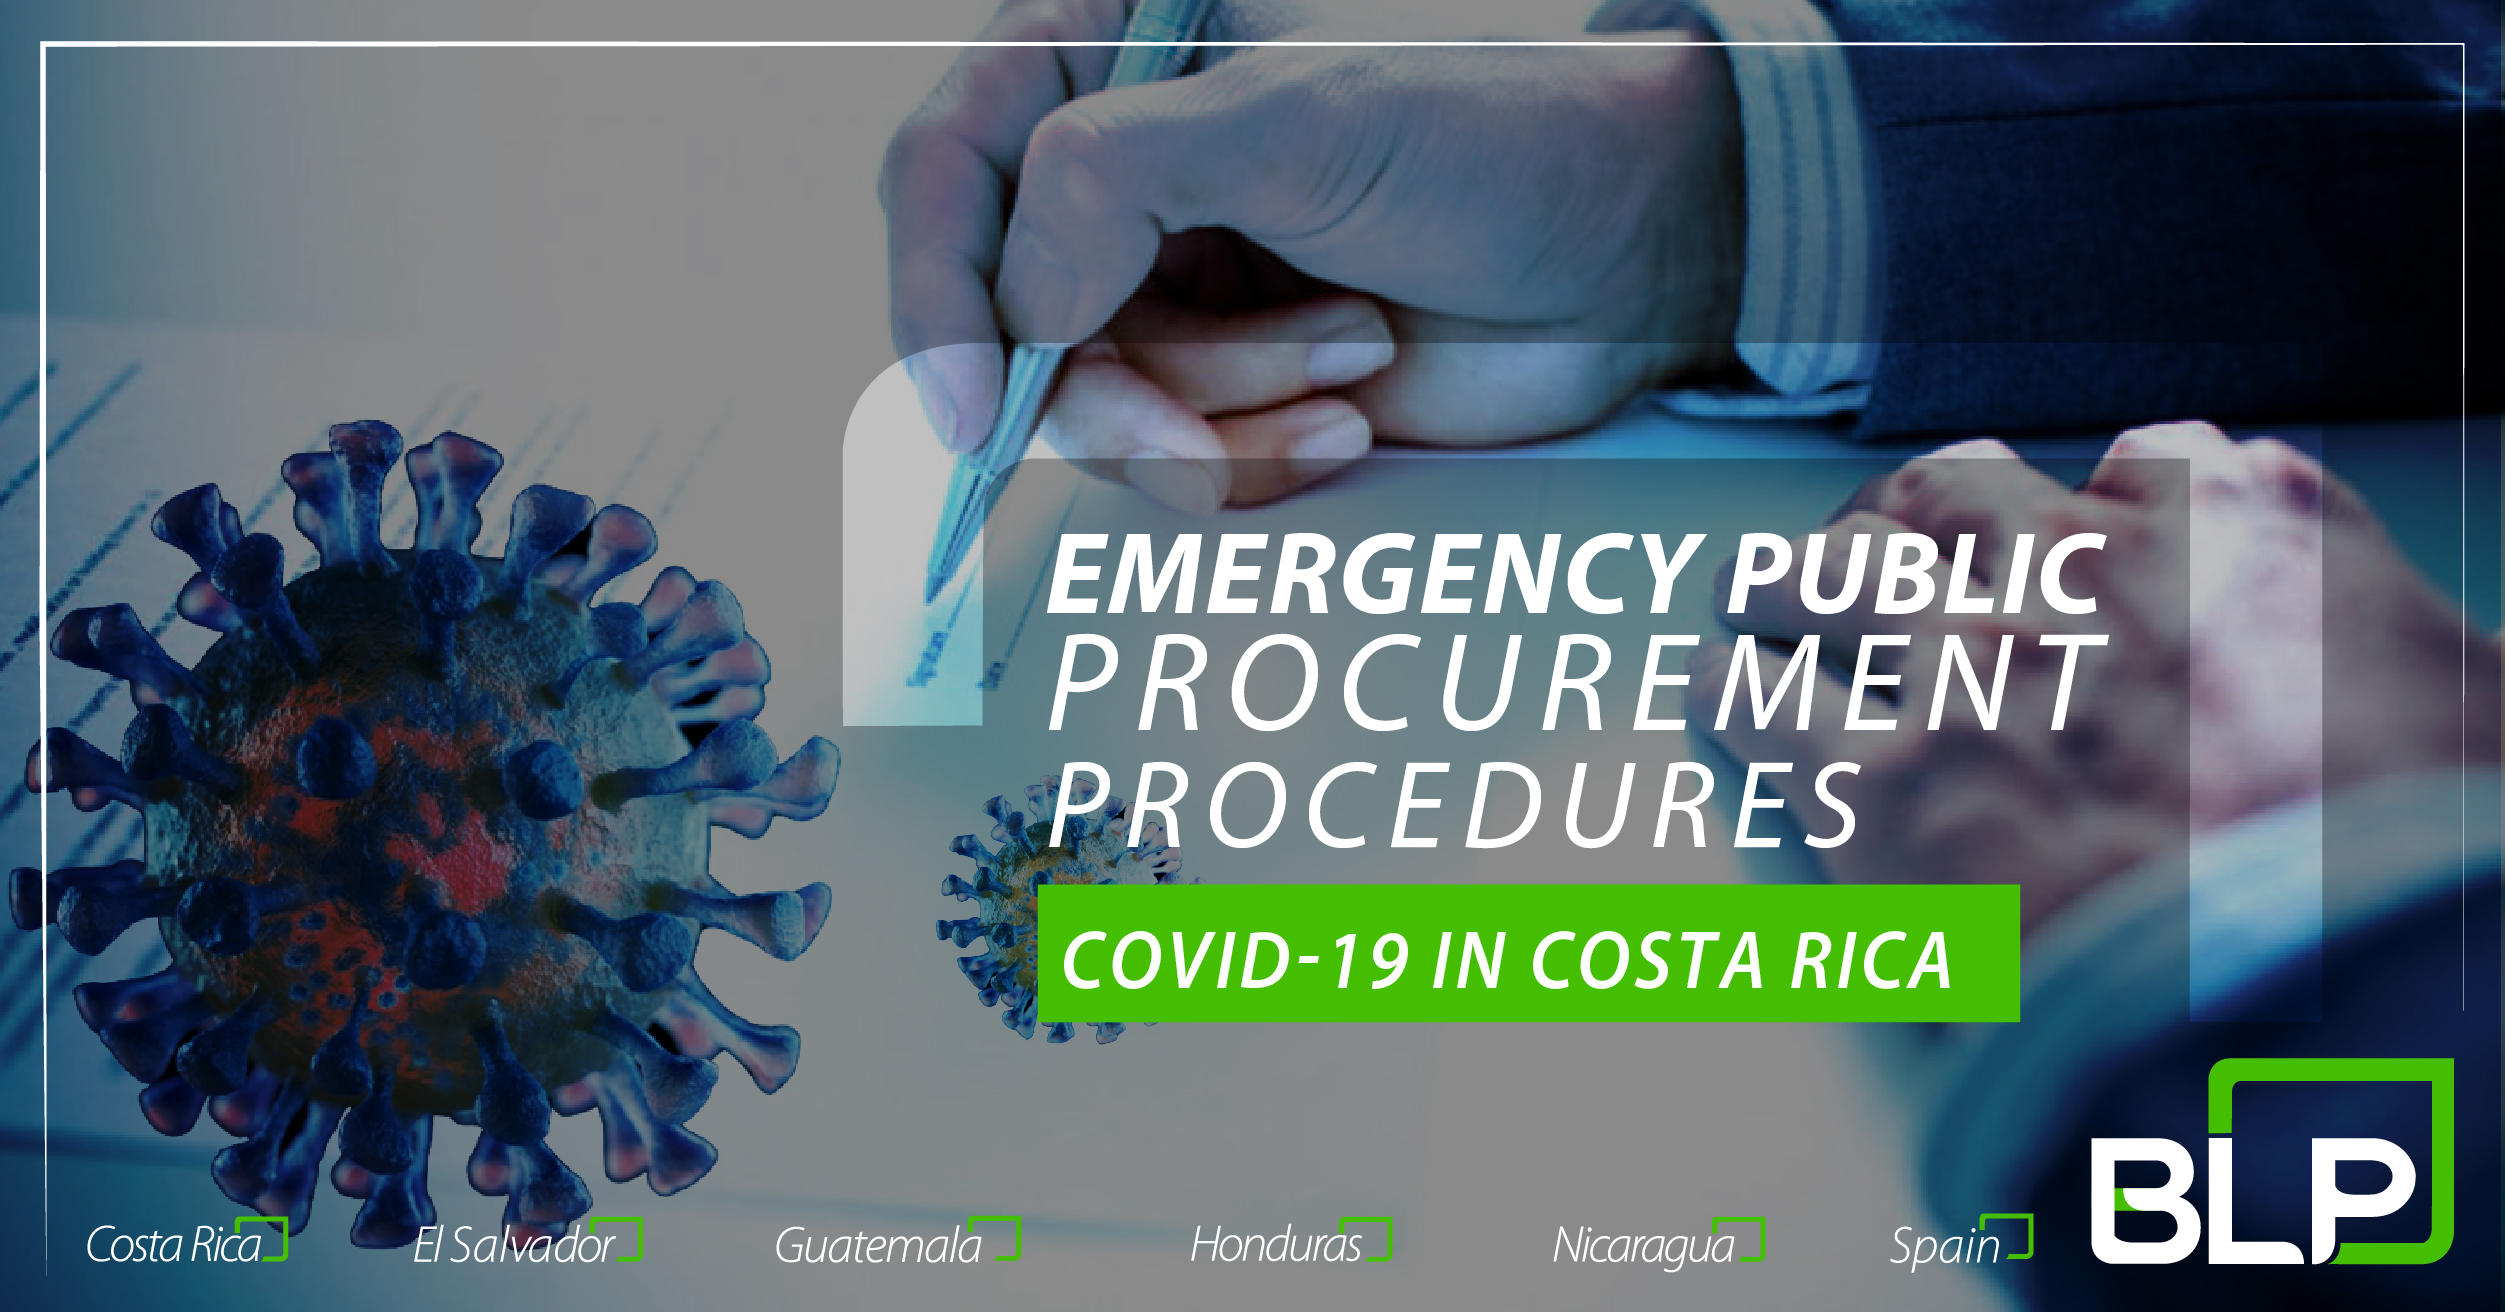 Emergency Public Procurement Procedures due to COVID-19.